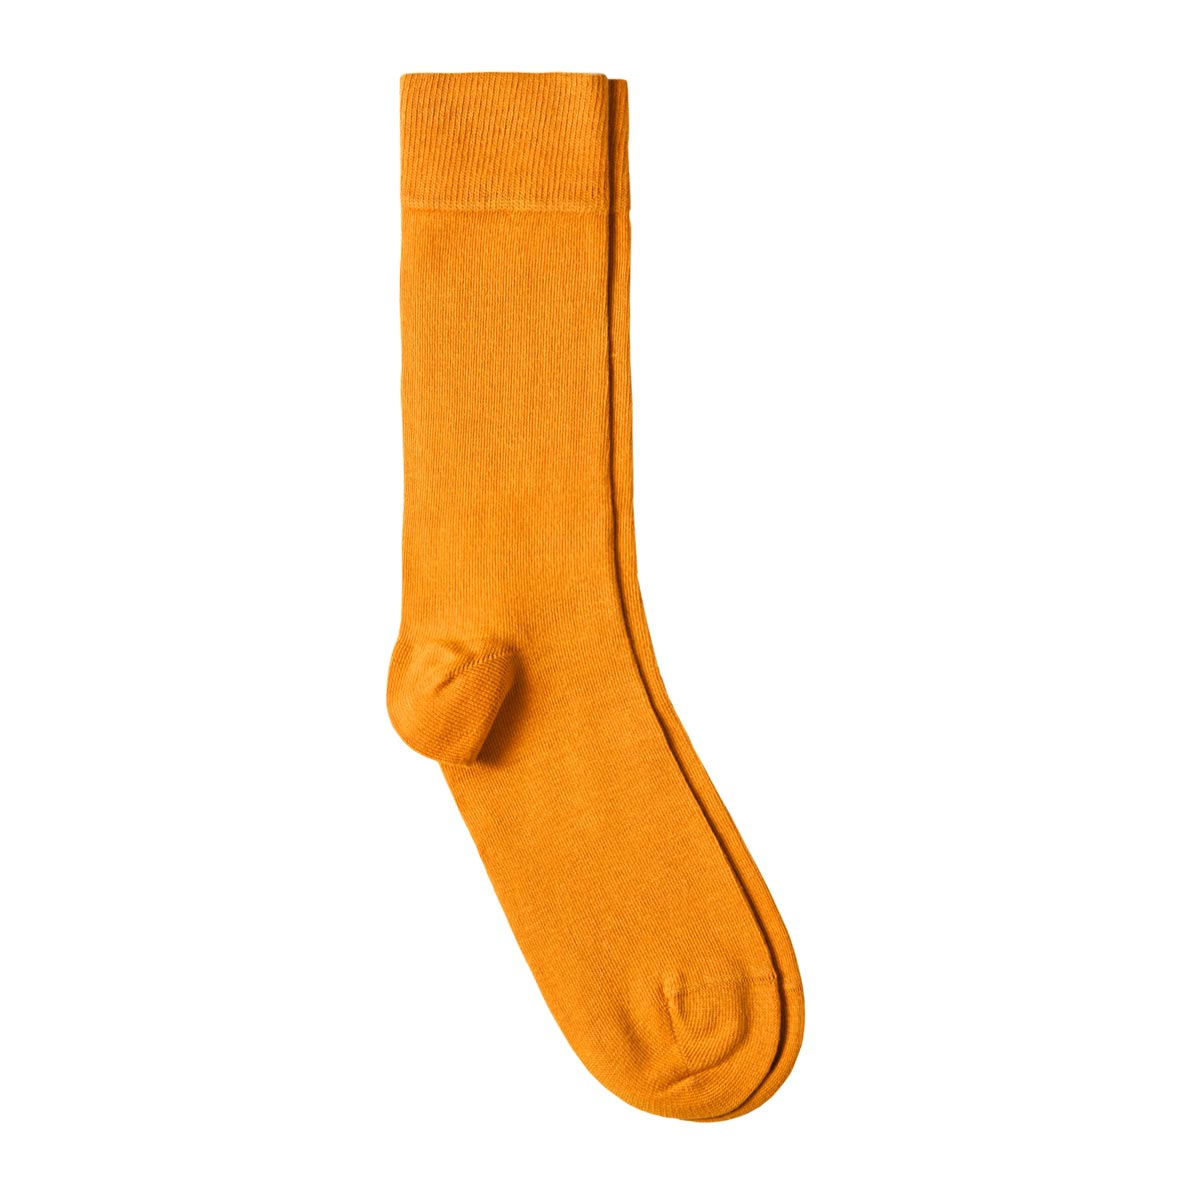 Fabriqué en europe Dandytouch Chaussettes Jersey Homme unies Orange 39-45